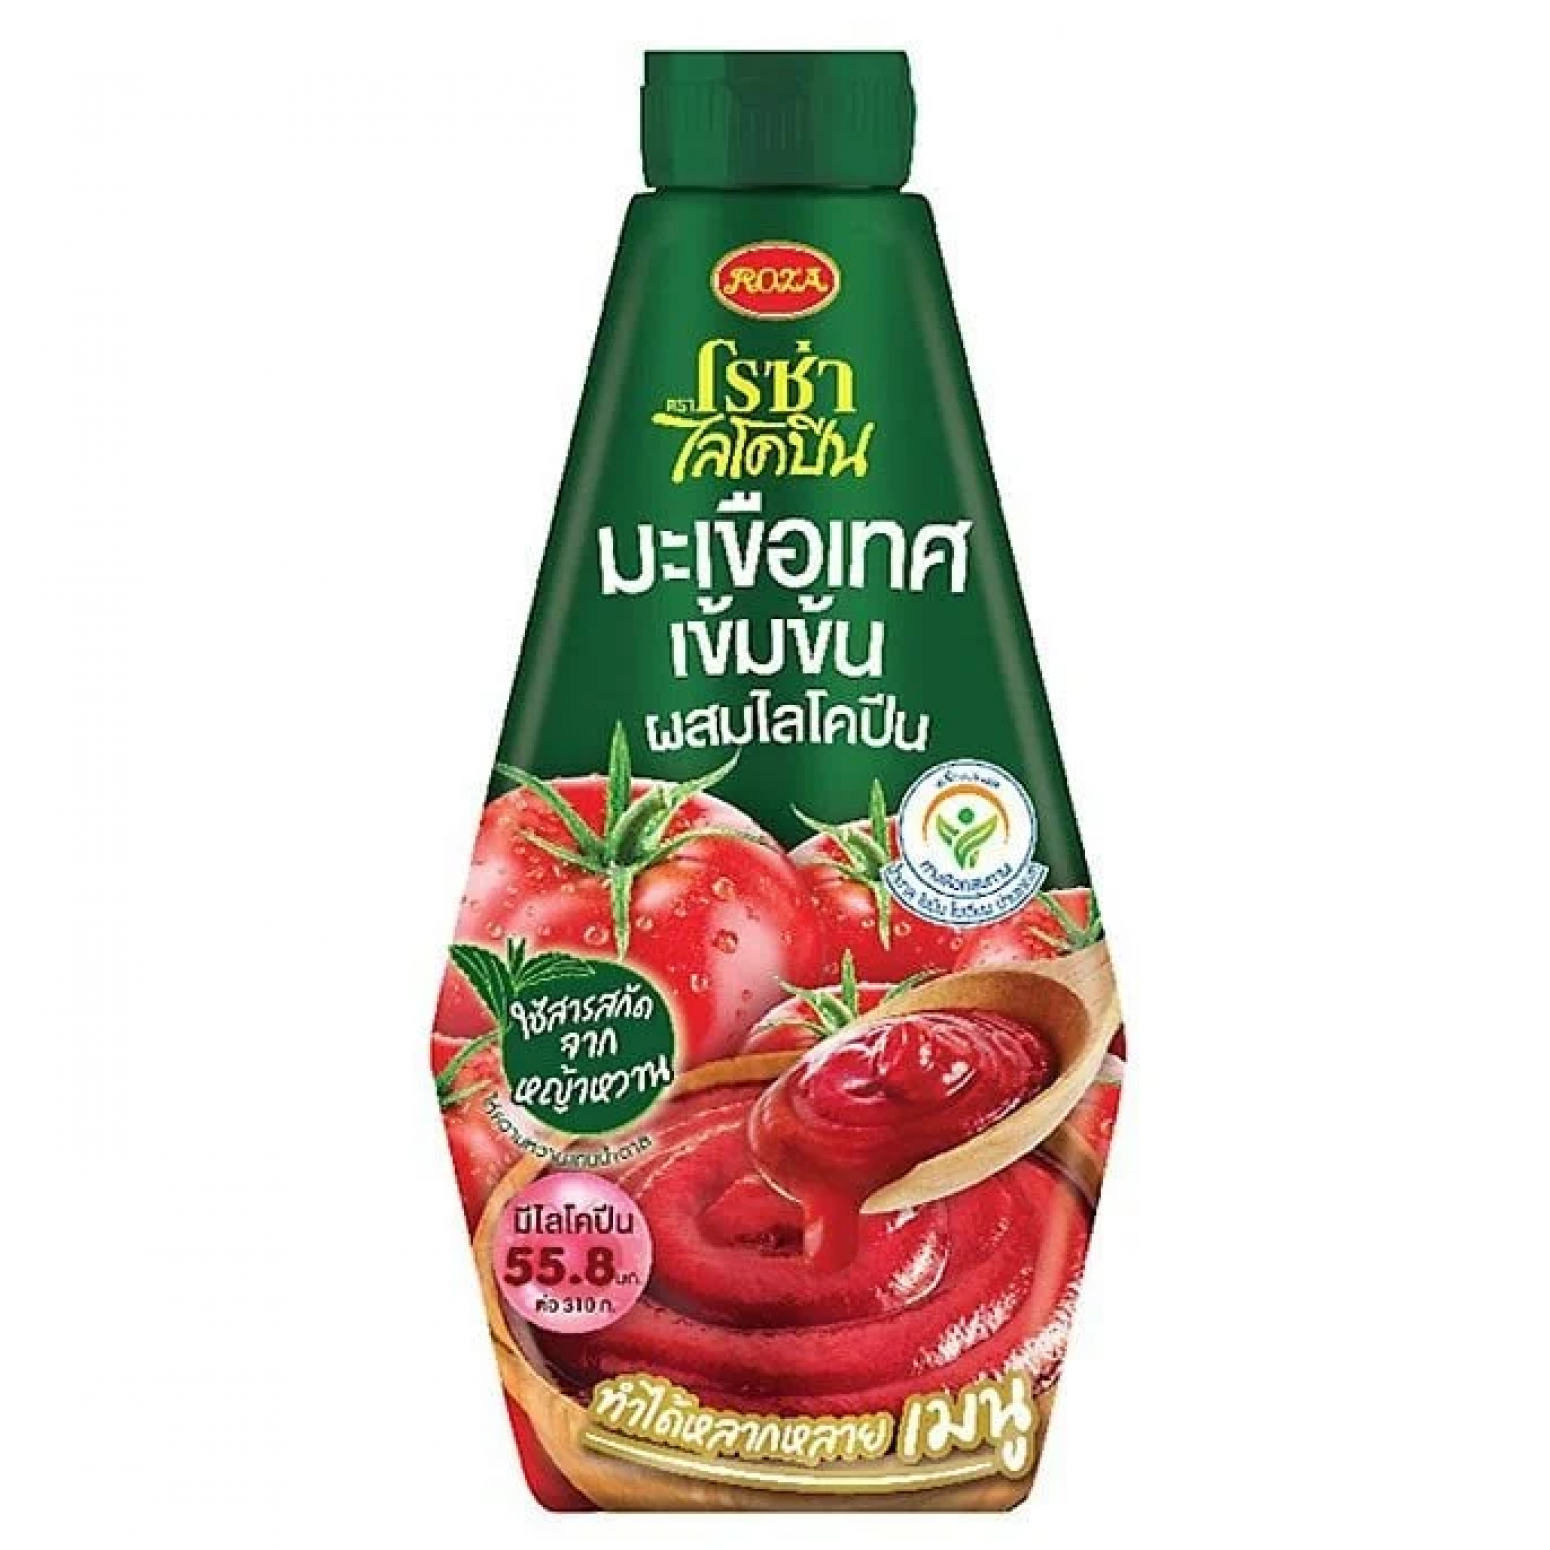 Roza Lycopene Tomato Ketchup 310g.